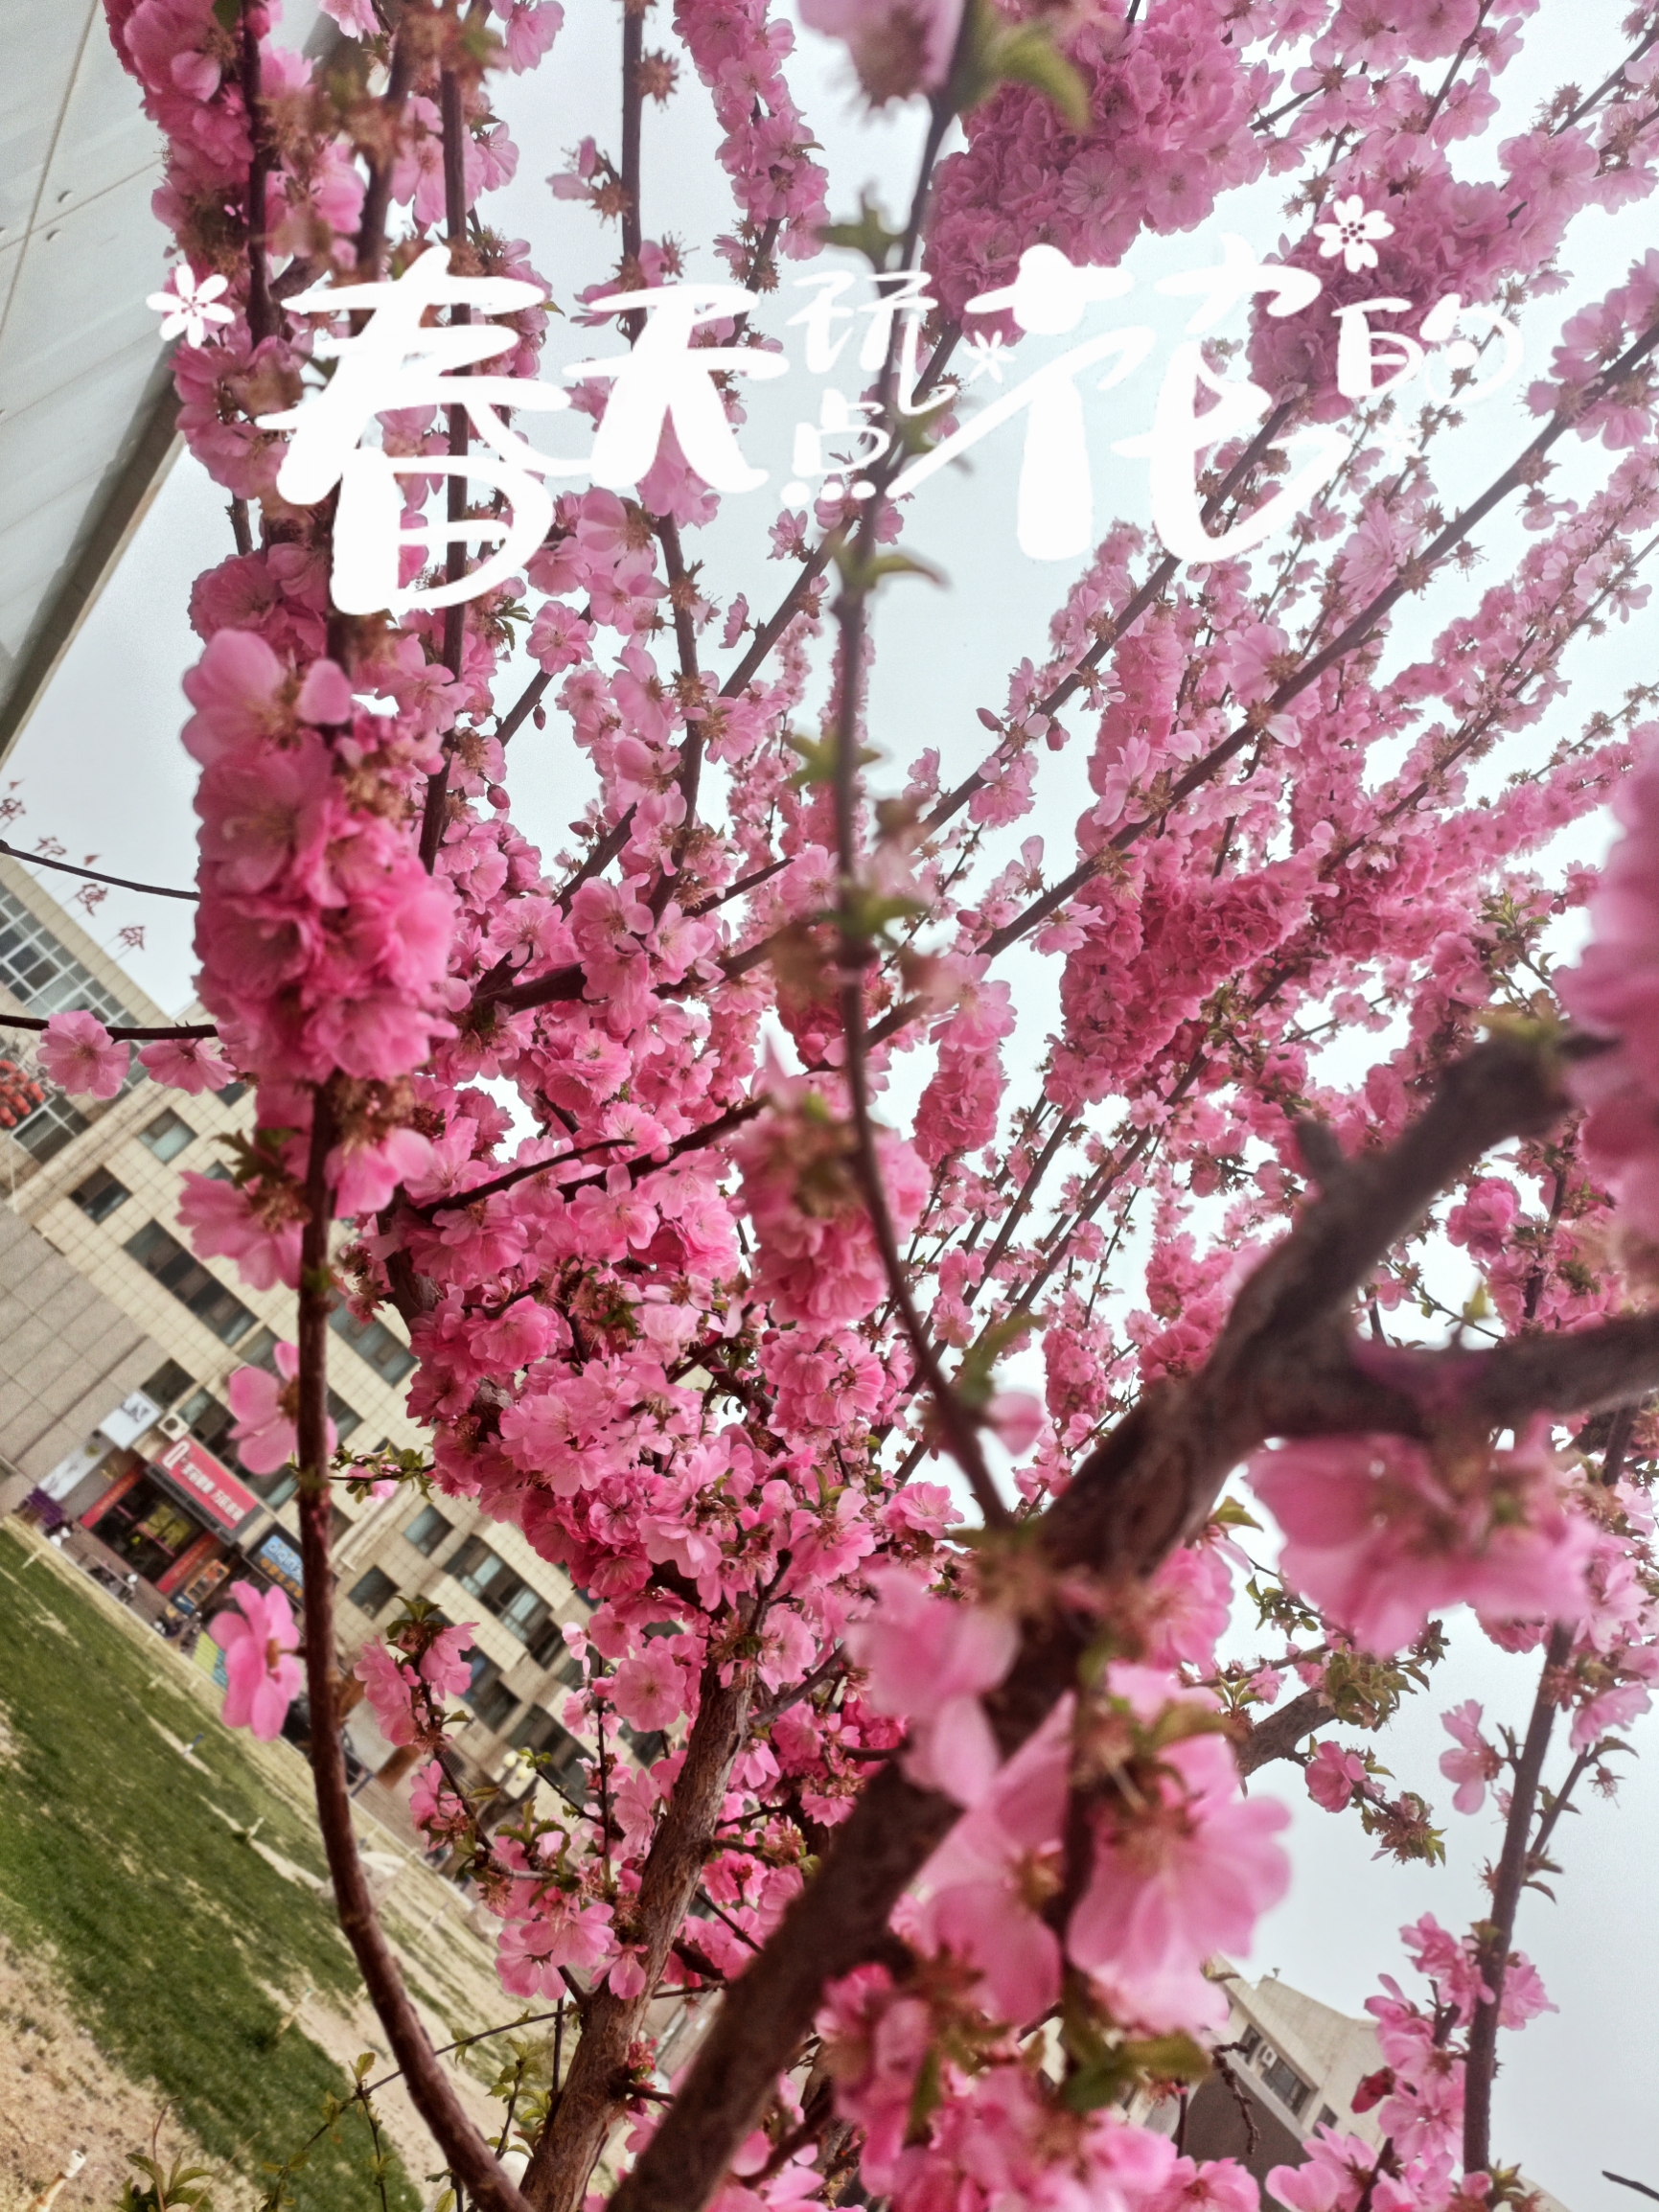 杏花在春季的温暖阳光中绽放，它的出现犹如一首优美的诗篇。那洁白如雪的花瓣在绿叶中若隐若现，使得整个春